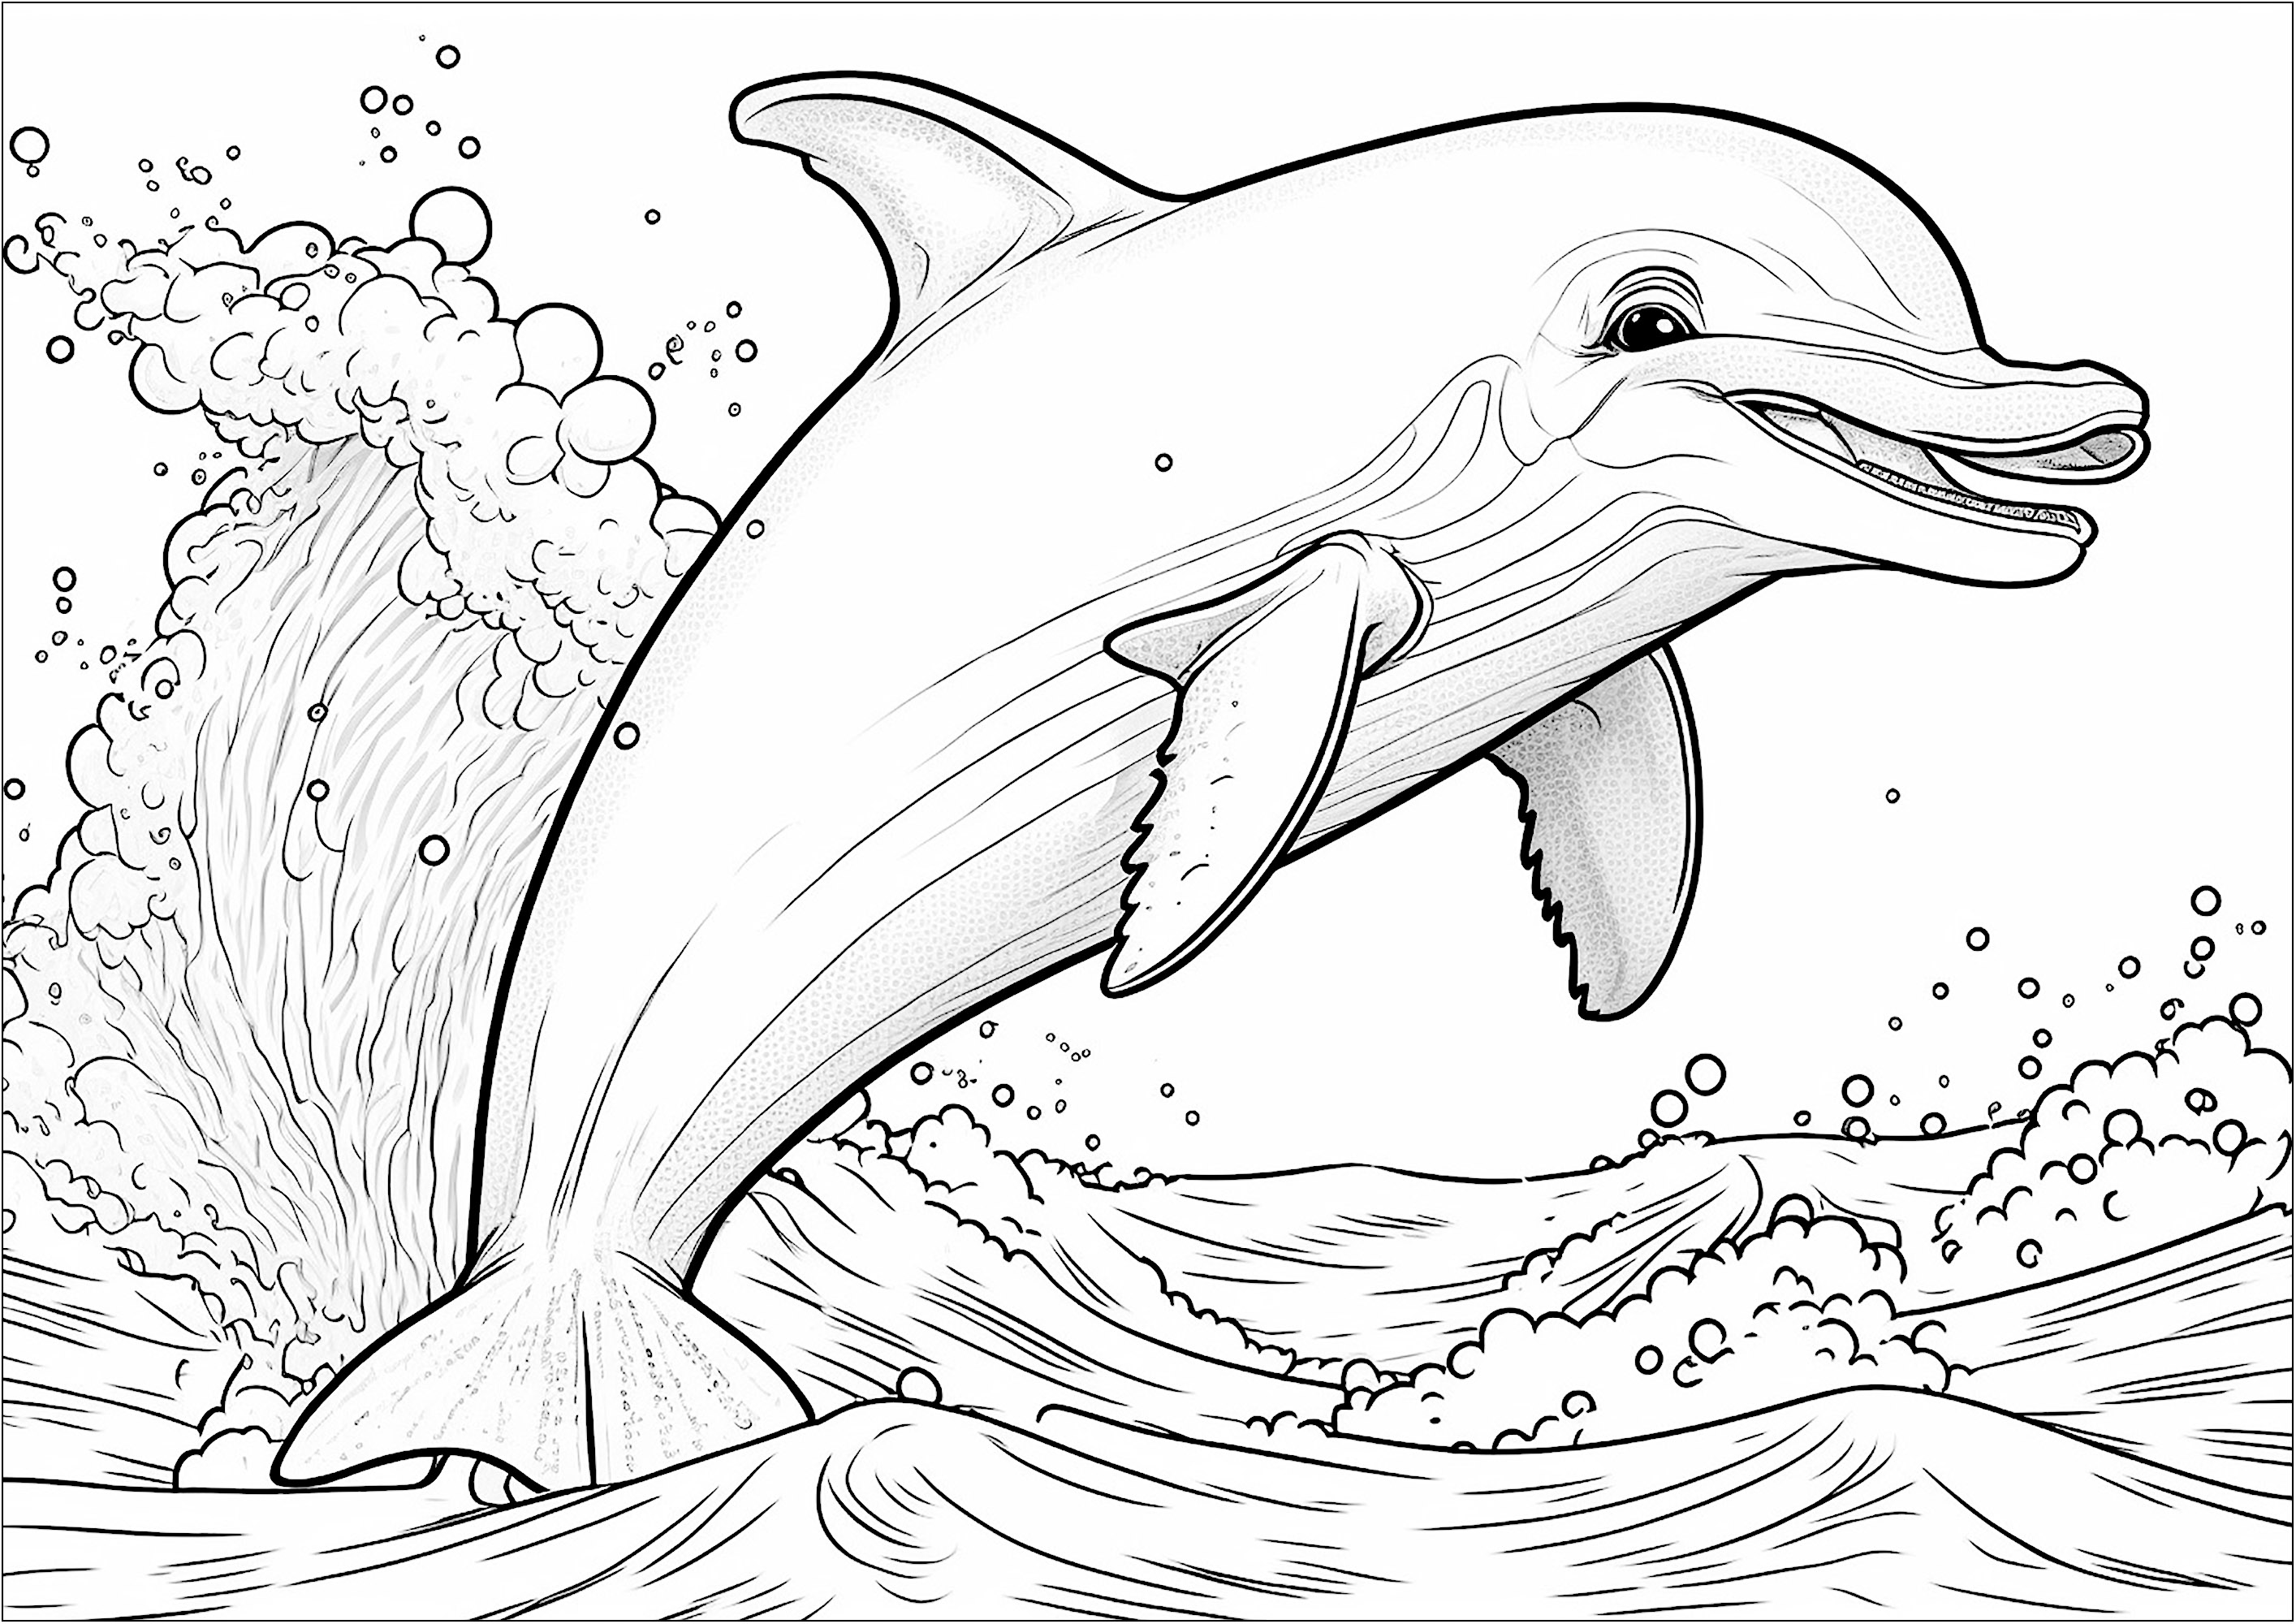 Coloração de um golfinho saltando fora de água. Esta página de coloração é perfeita para crianças que adoram animais marinhos. O desenho mostra um golfinho sorridente a saltar alegremente para fora da água.